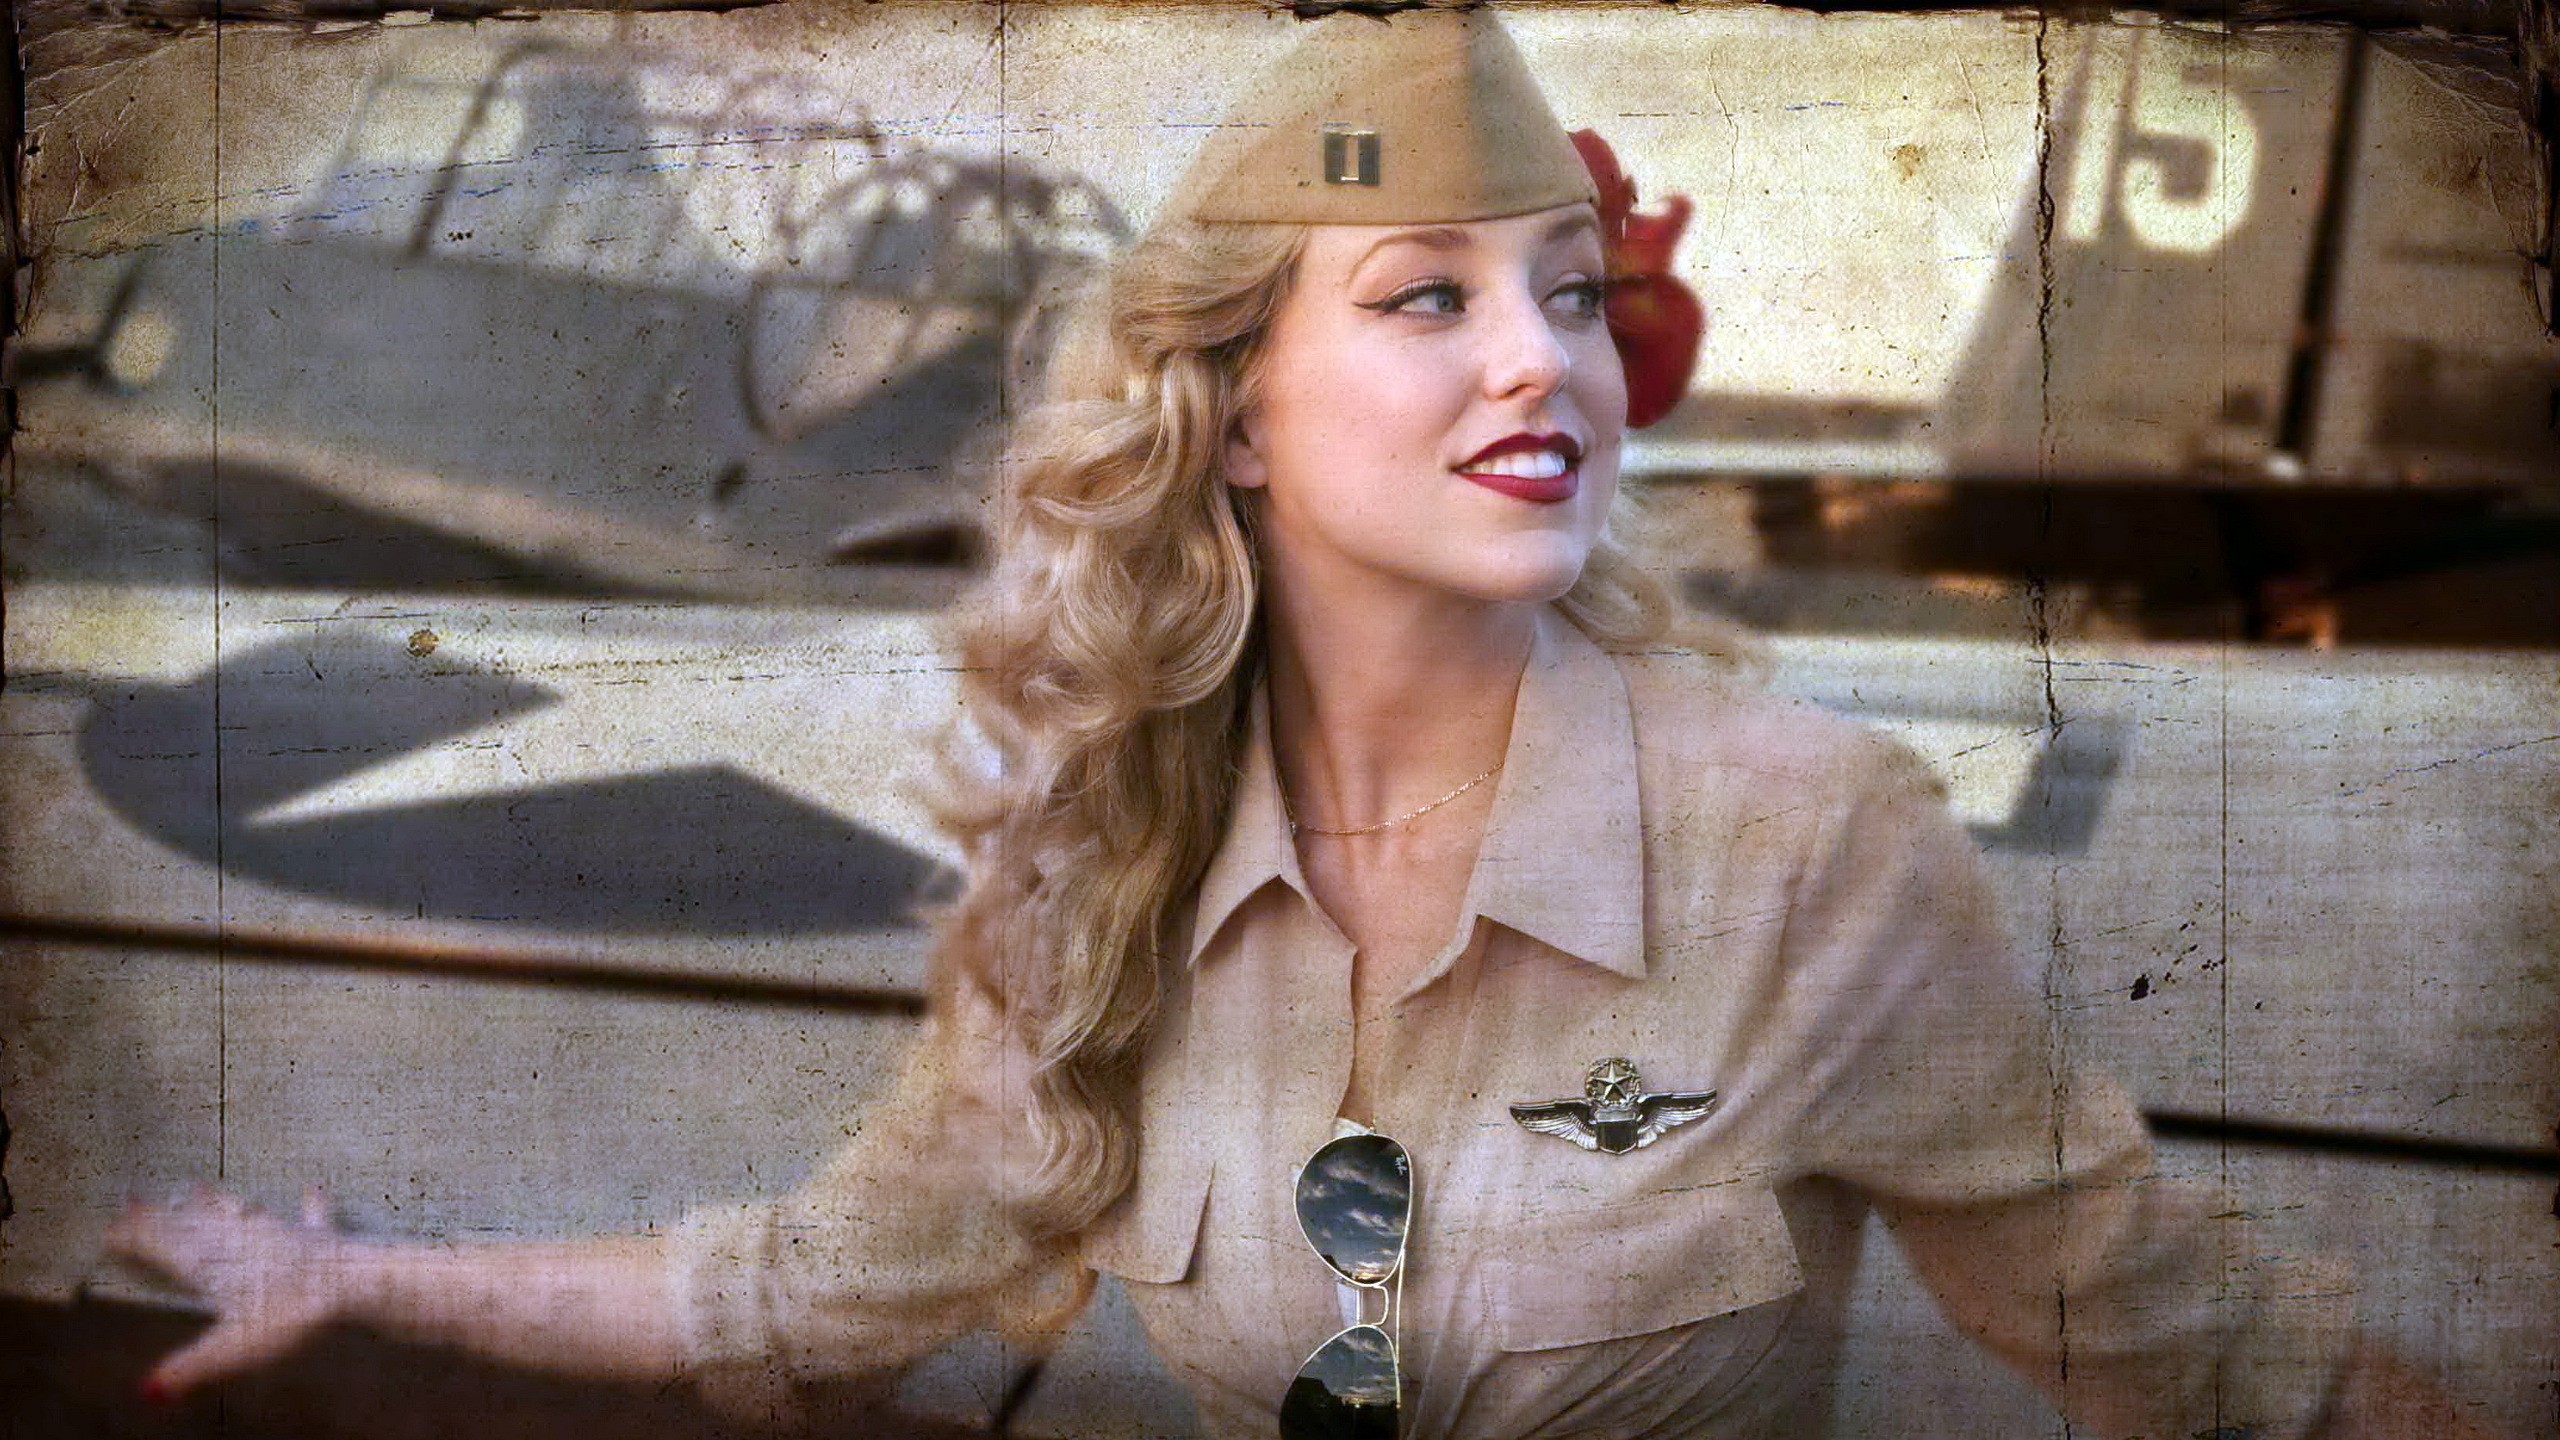 Блондинки в военной форме фото